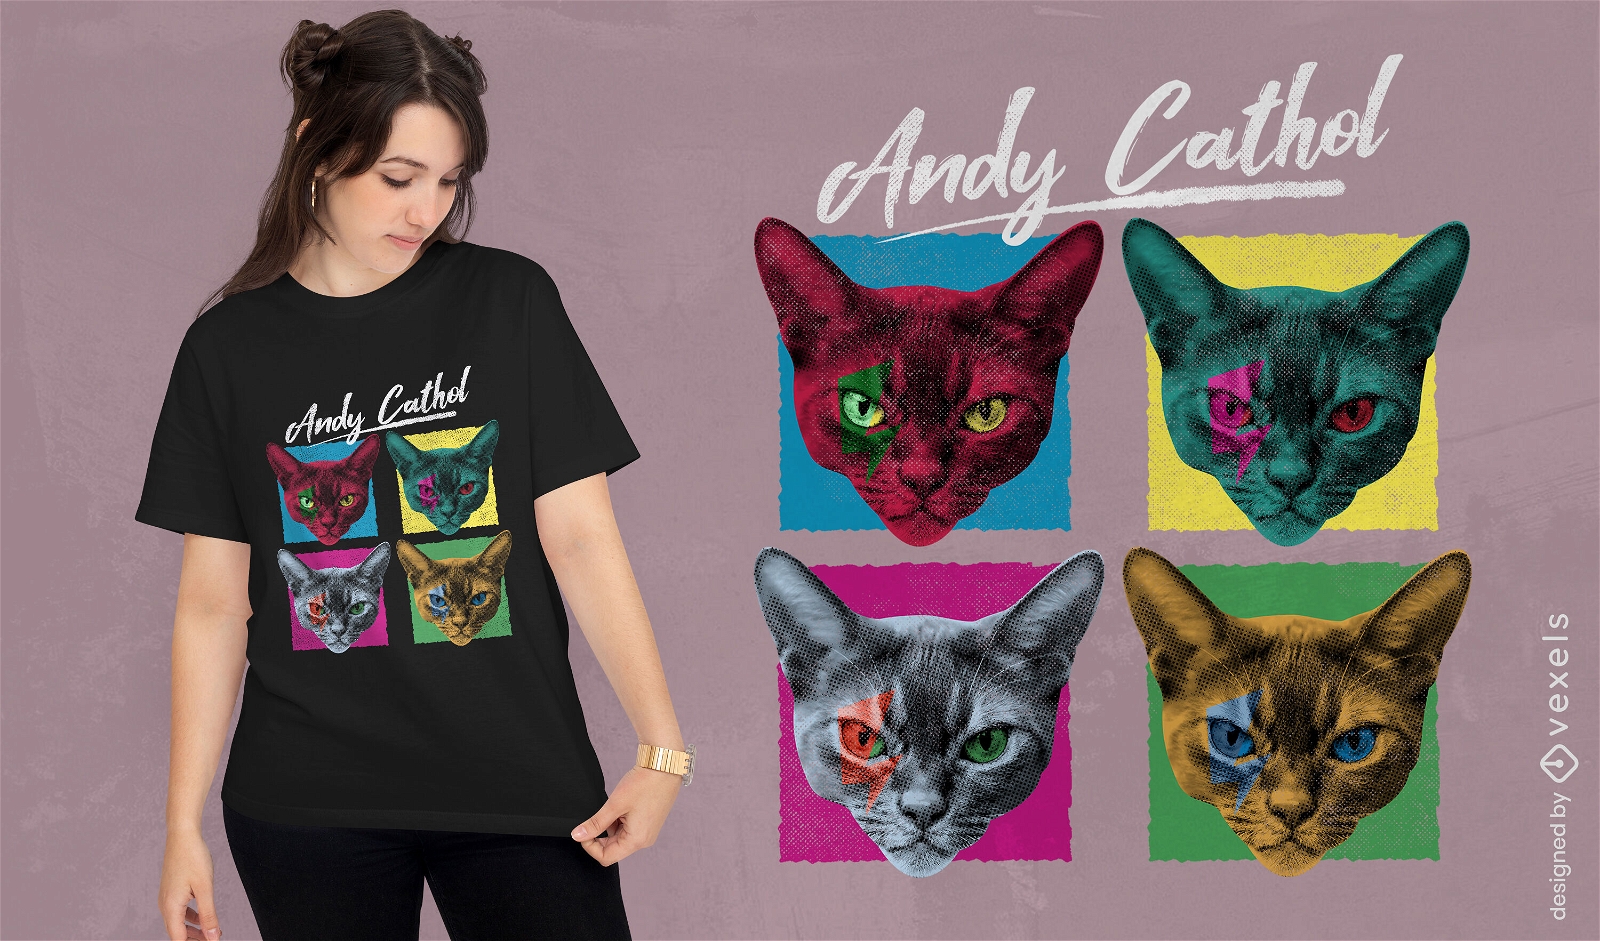 Gatos em camiseta estilo par?dia pop art psd